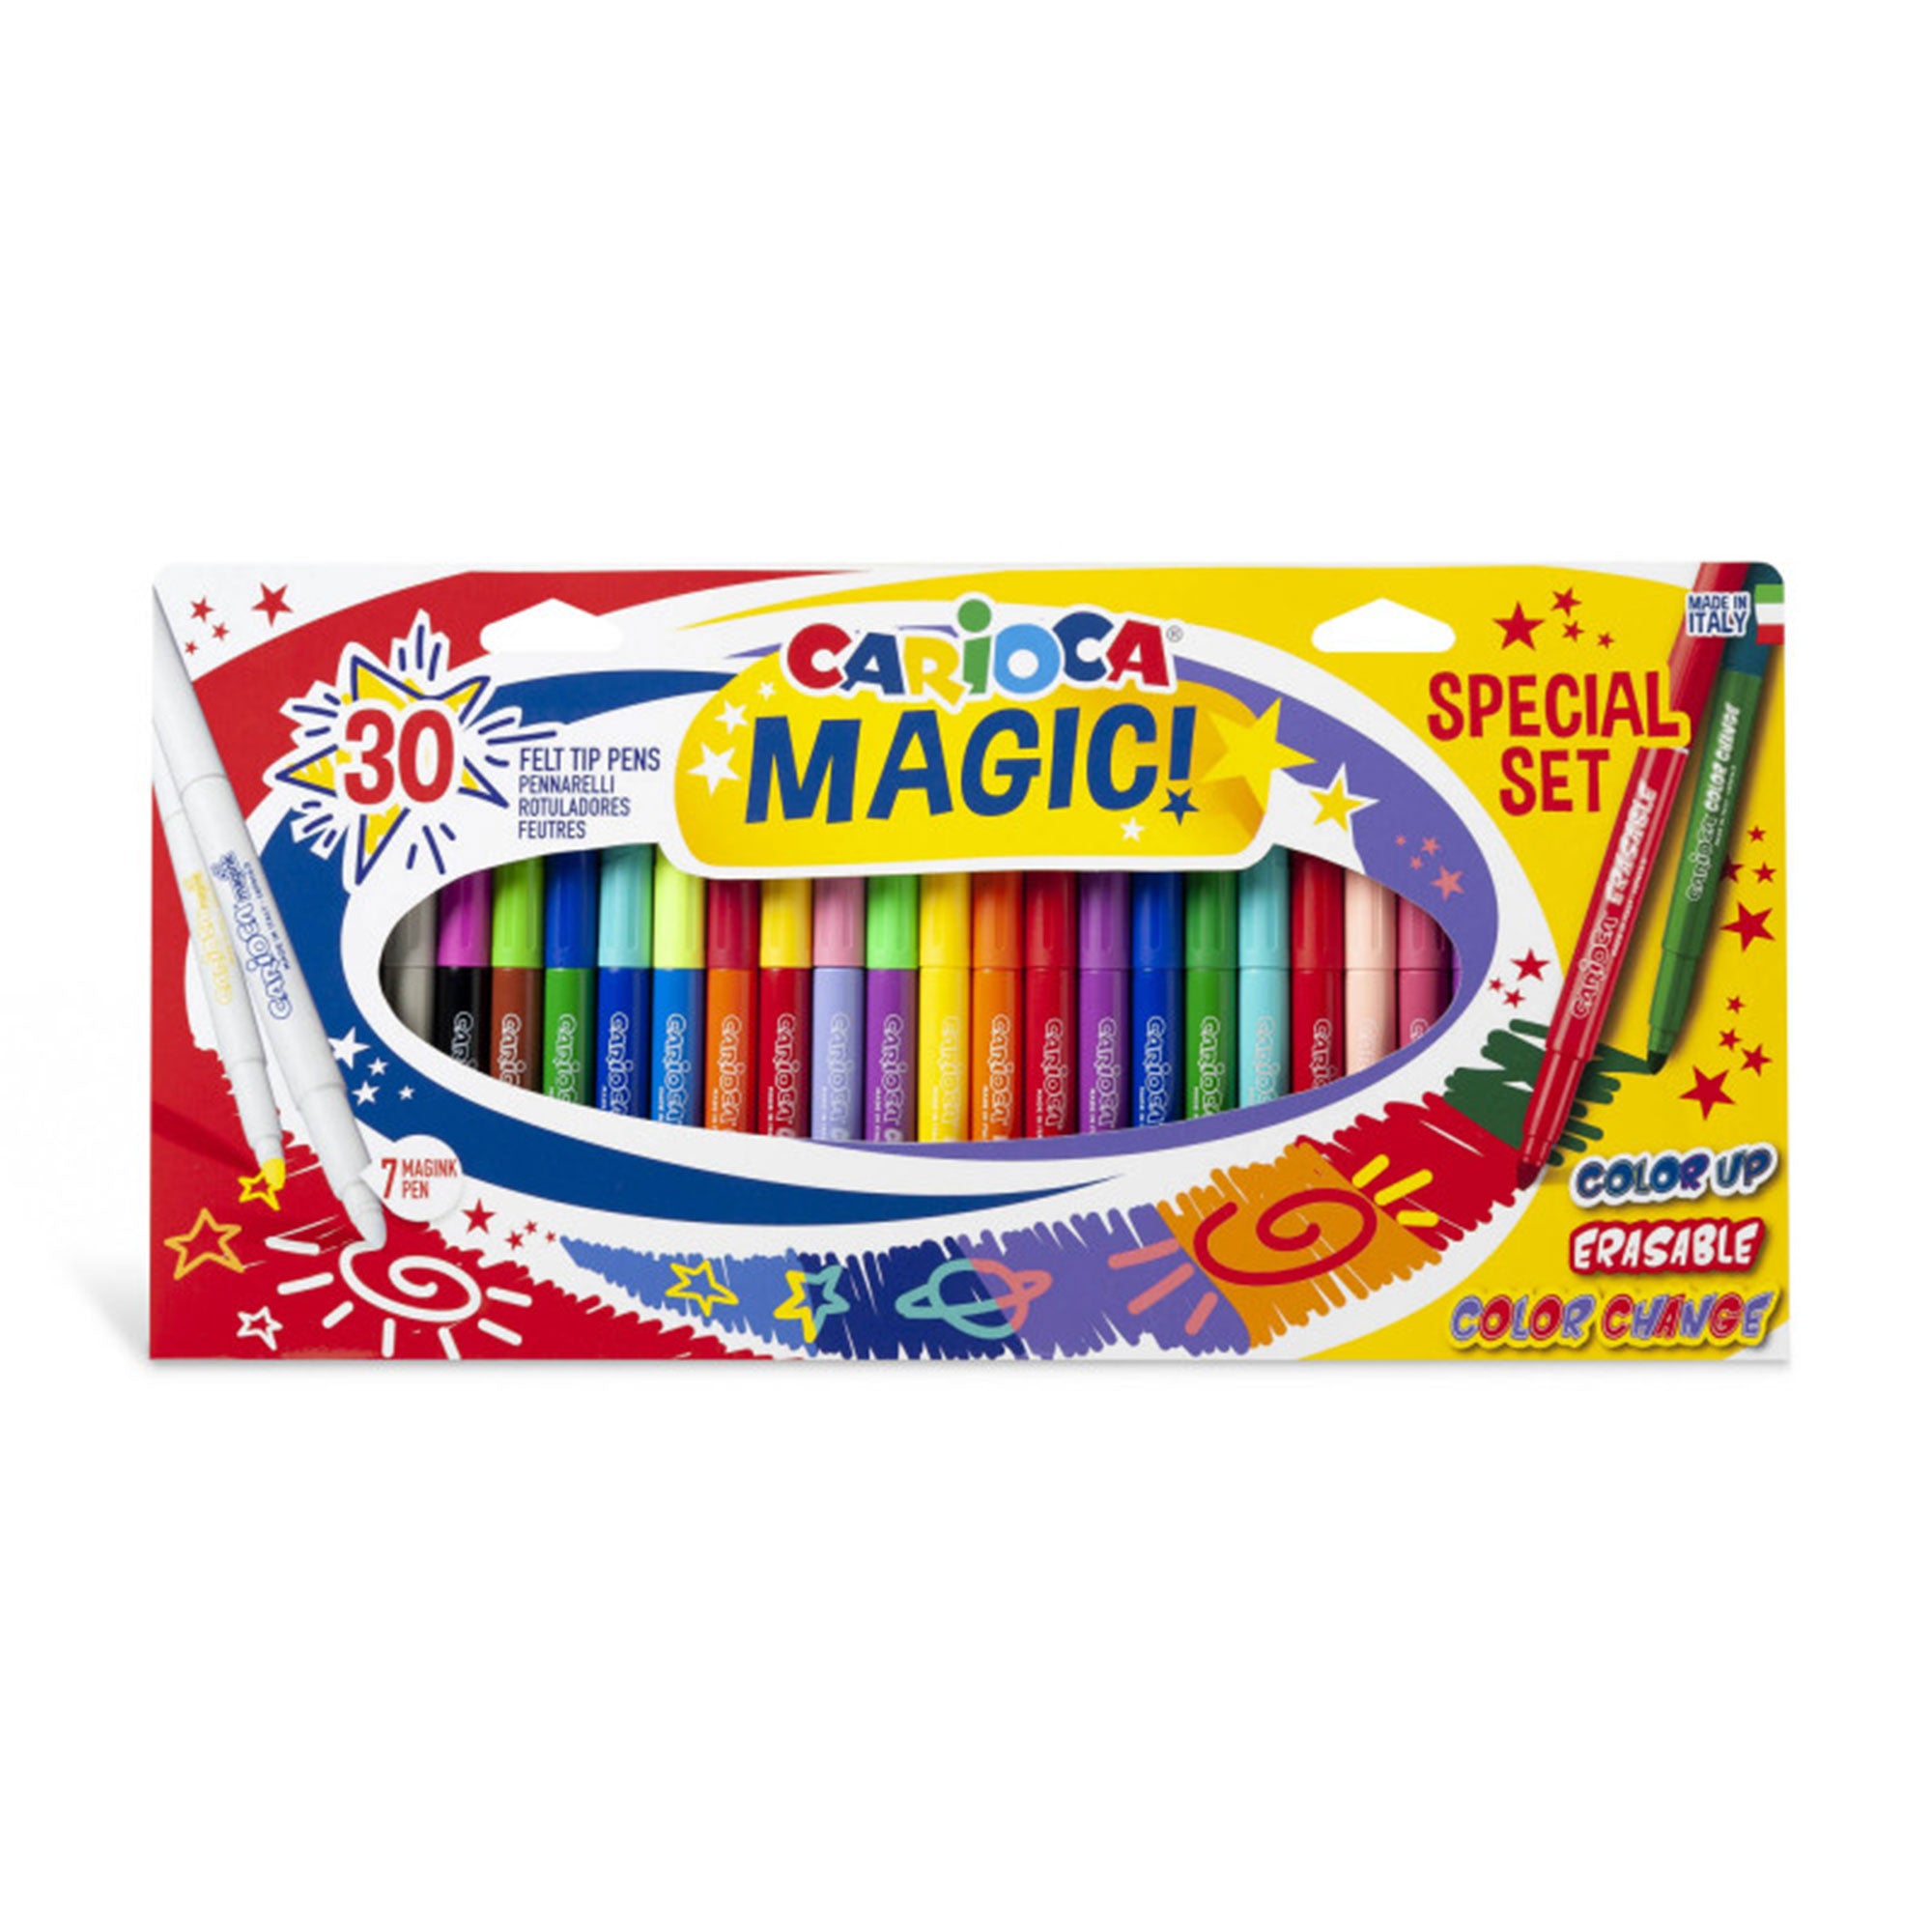 Crayola Super Tips Washable Markers, 100 Count – Crayola Canada